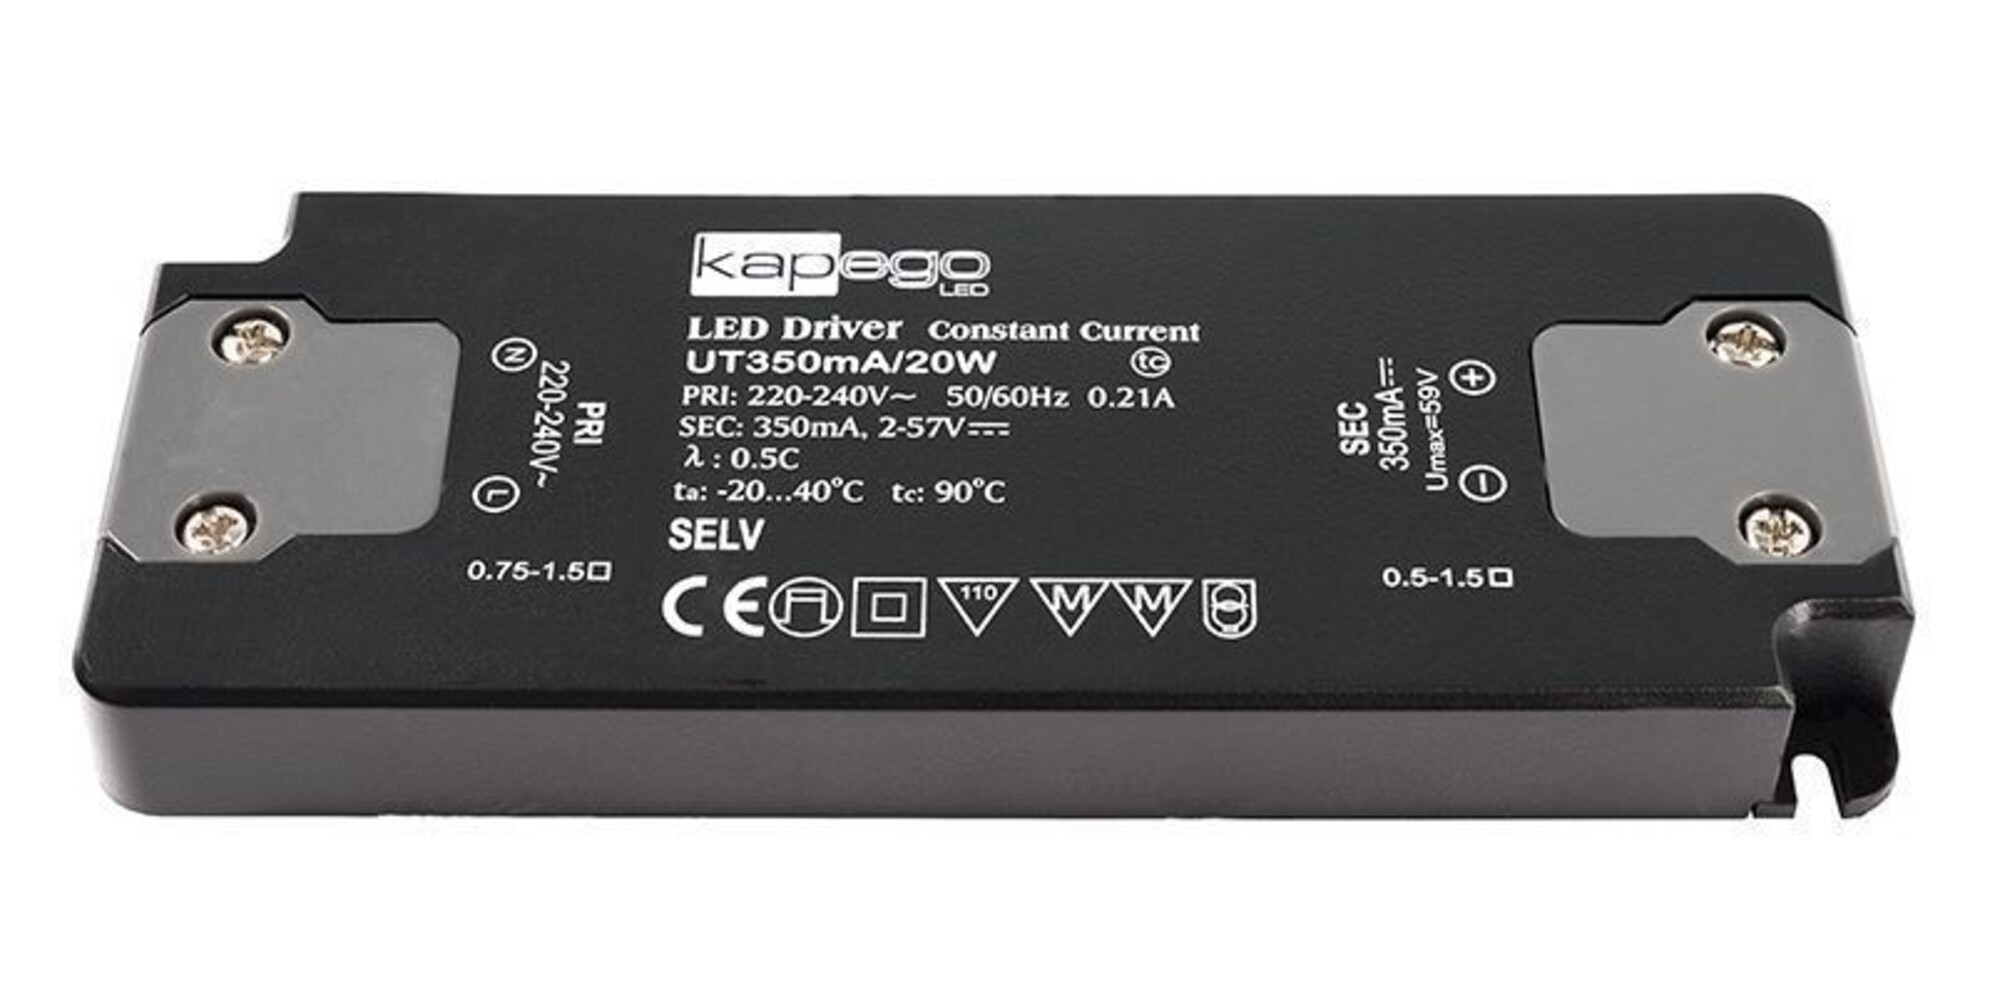 Hochwertiges LED Netzteil von der Marke Deko-Light